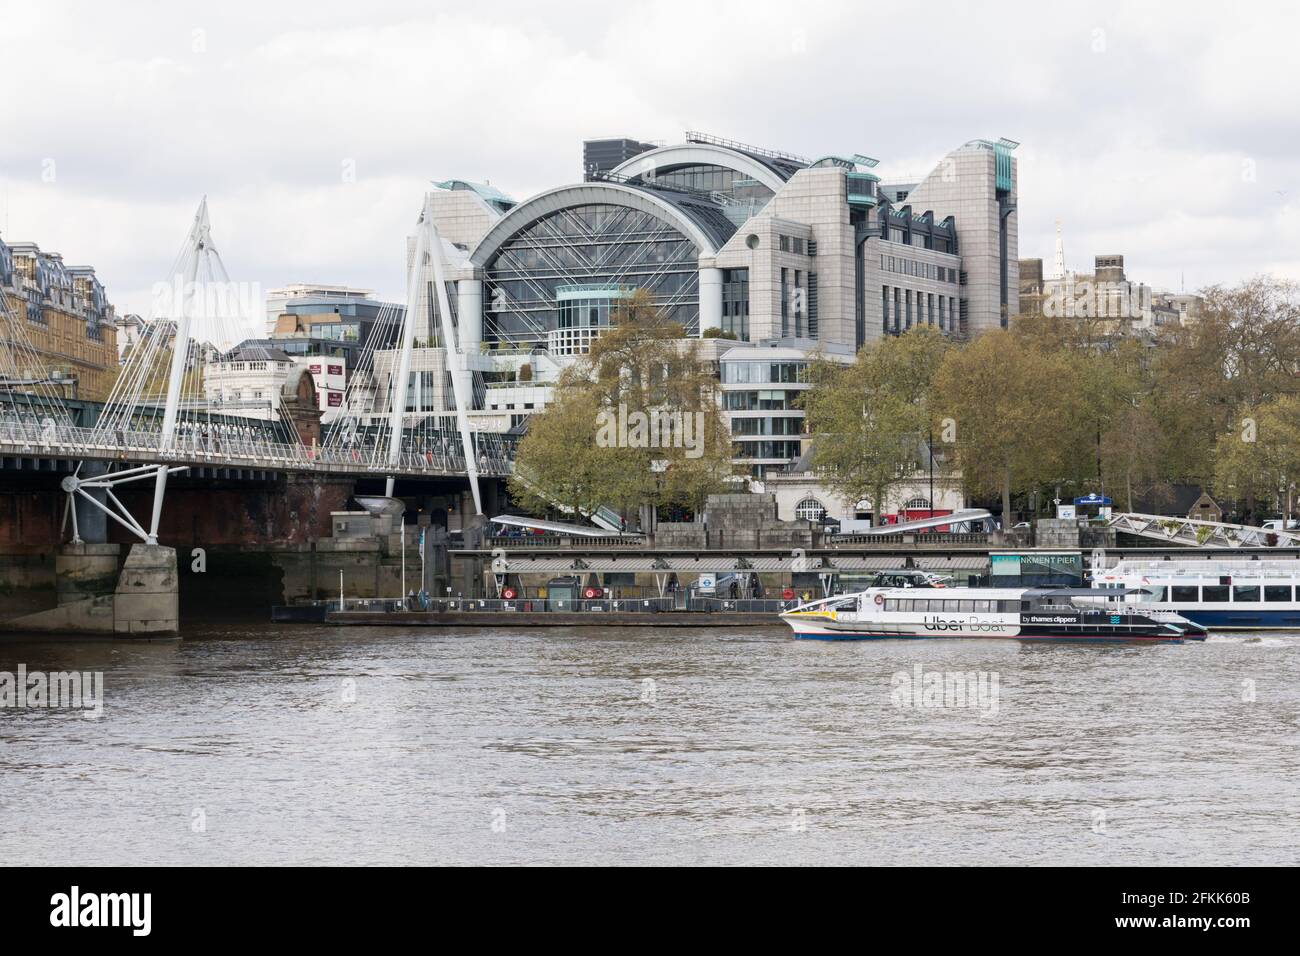 Ein Thames Clipper Uber Boat liegt am Victoria Embankment Landeplatz auf der Themse. Bahnhof Charing Cross im Hintergrund. Stockfoto